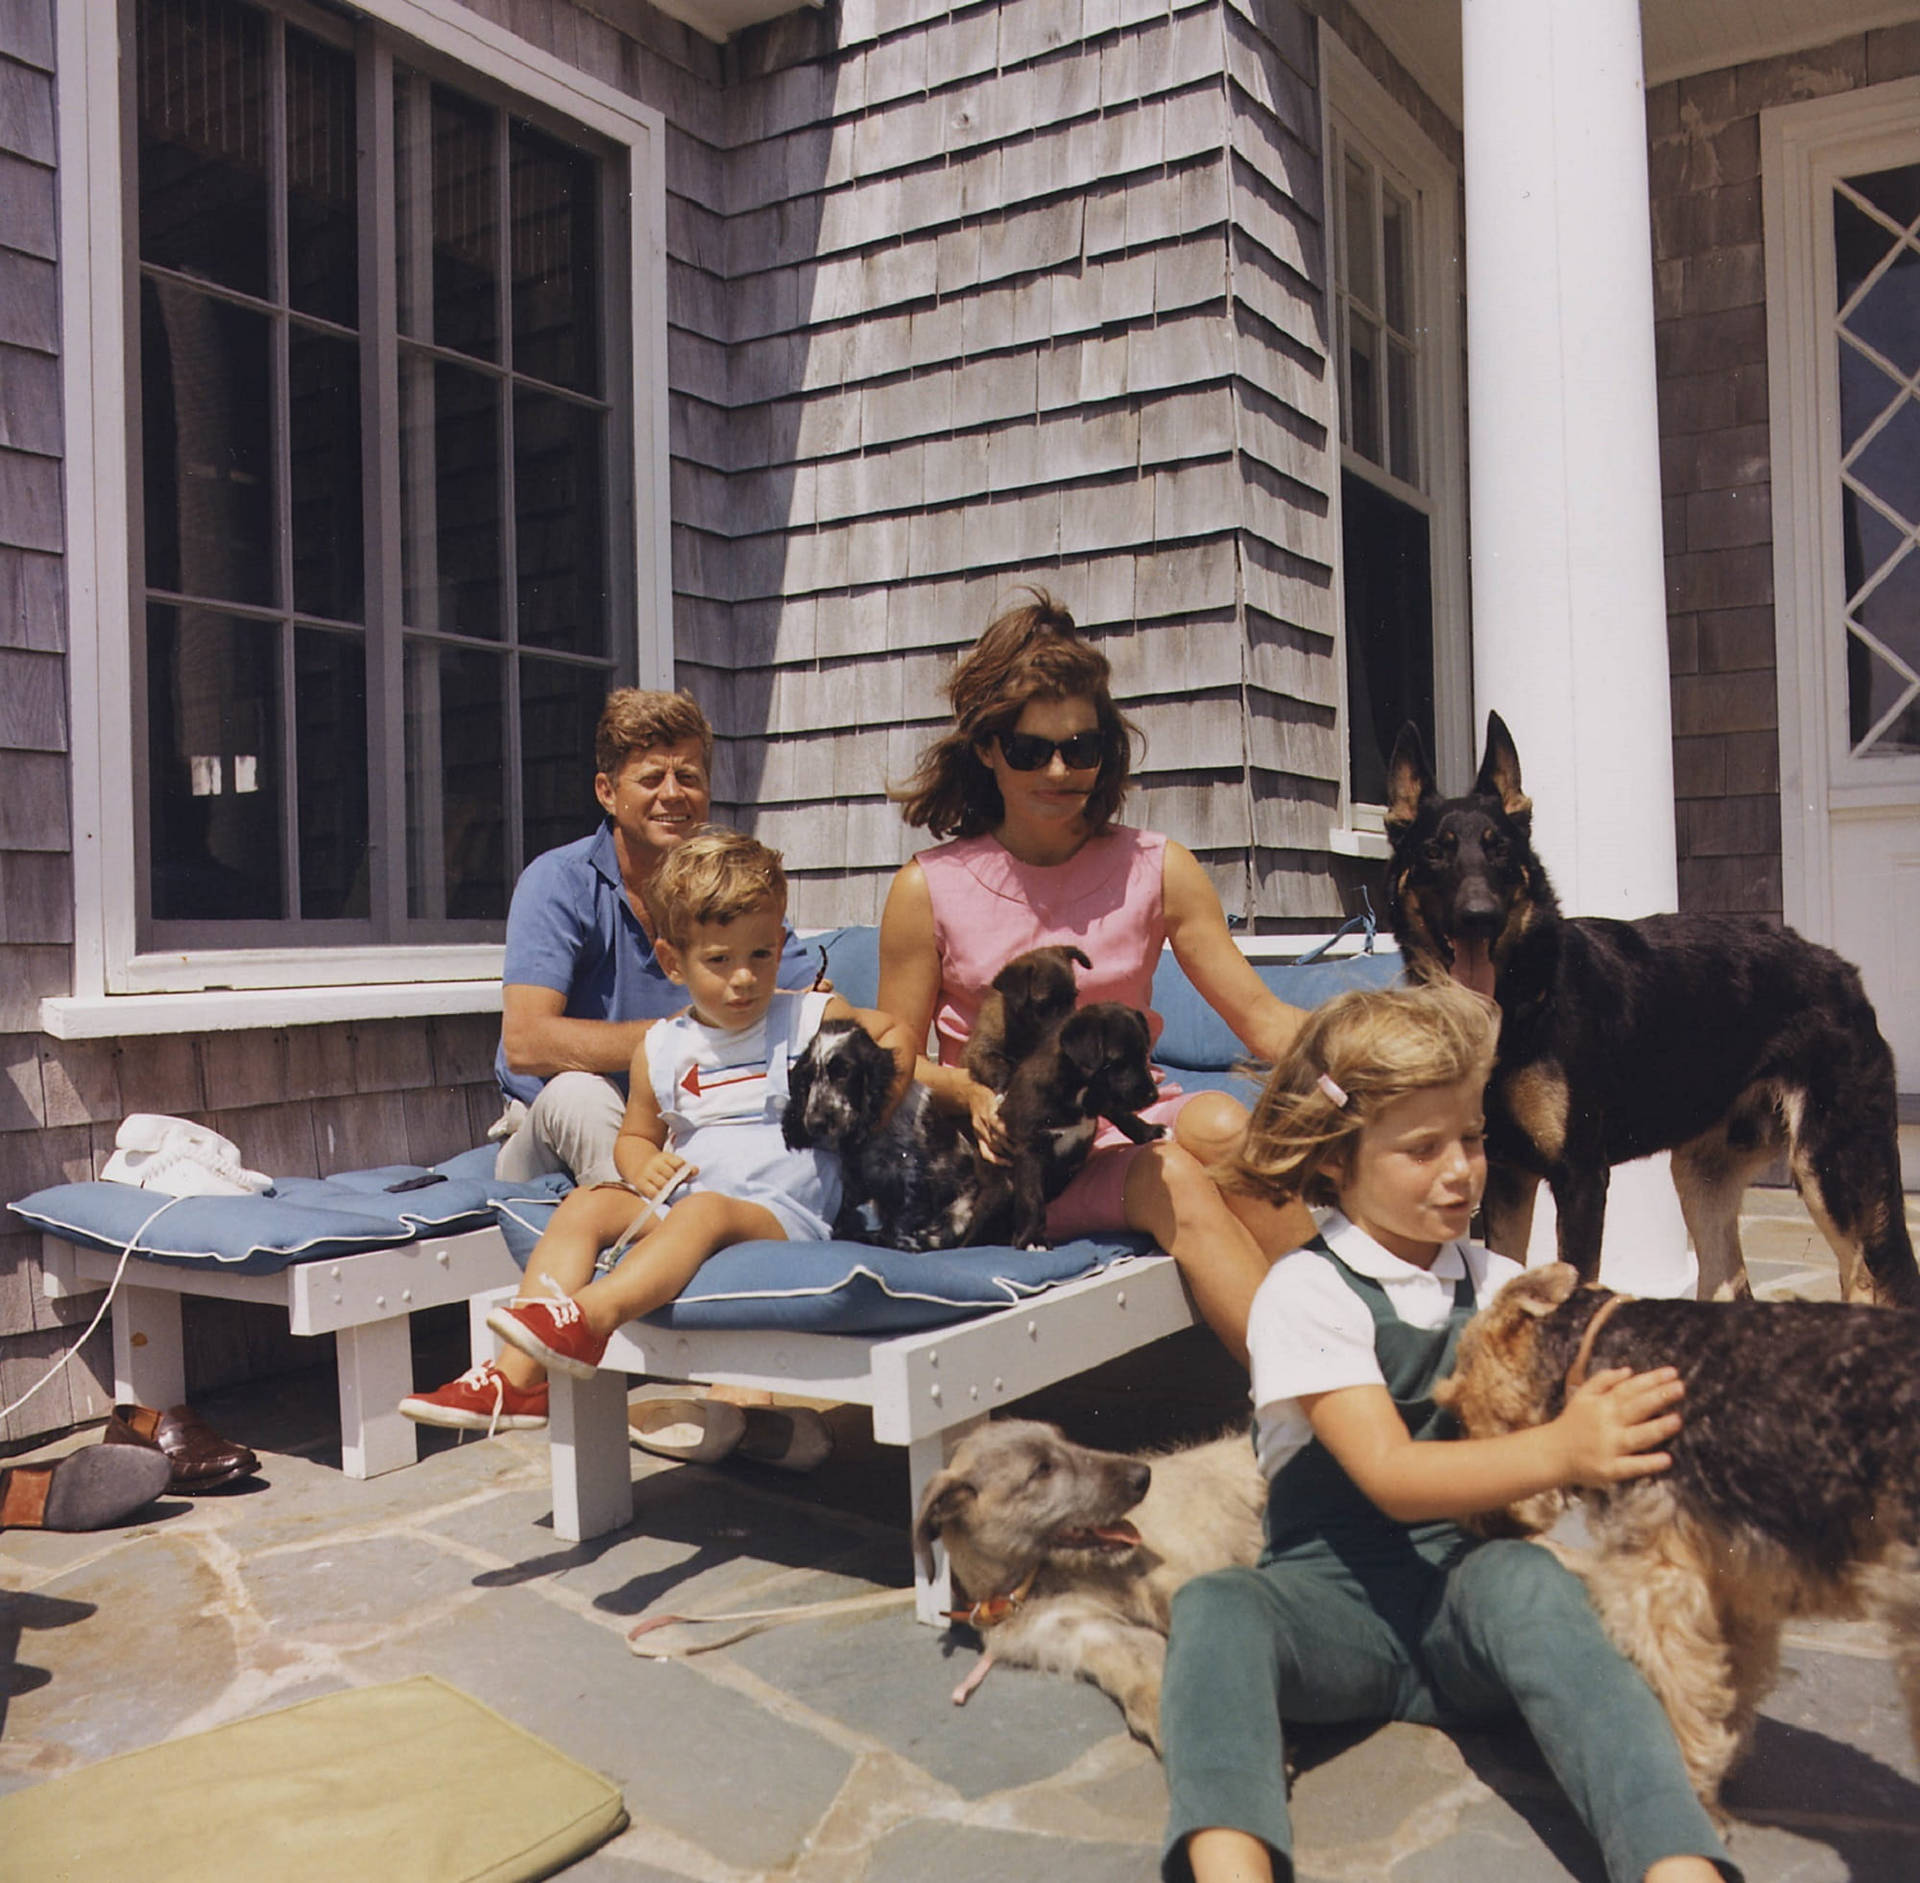 John F. Kennedy Family